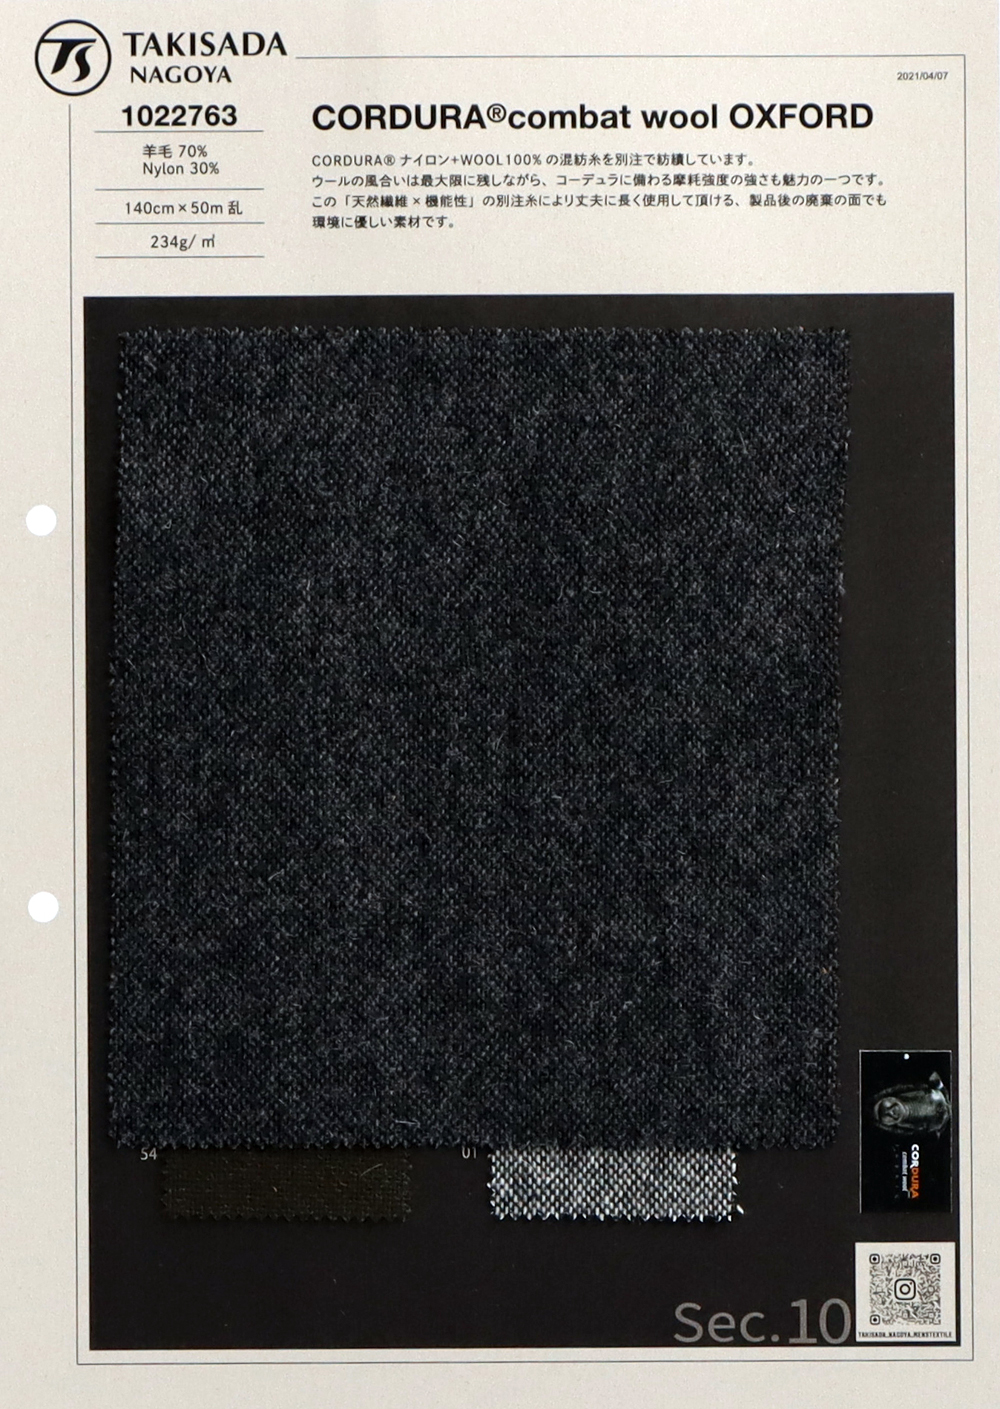 1022763 CORDURA Combat Wool Oxford[Textile] Takisada Nagoya